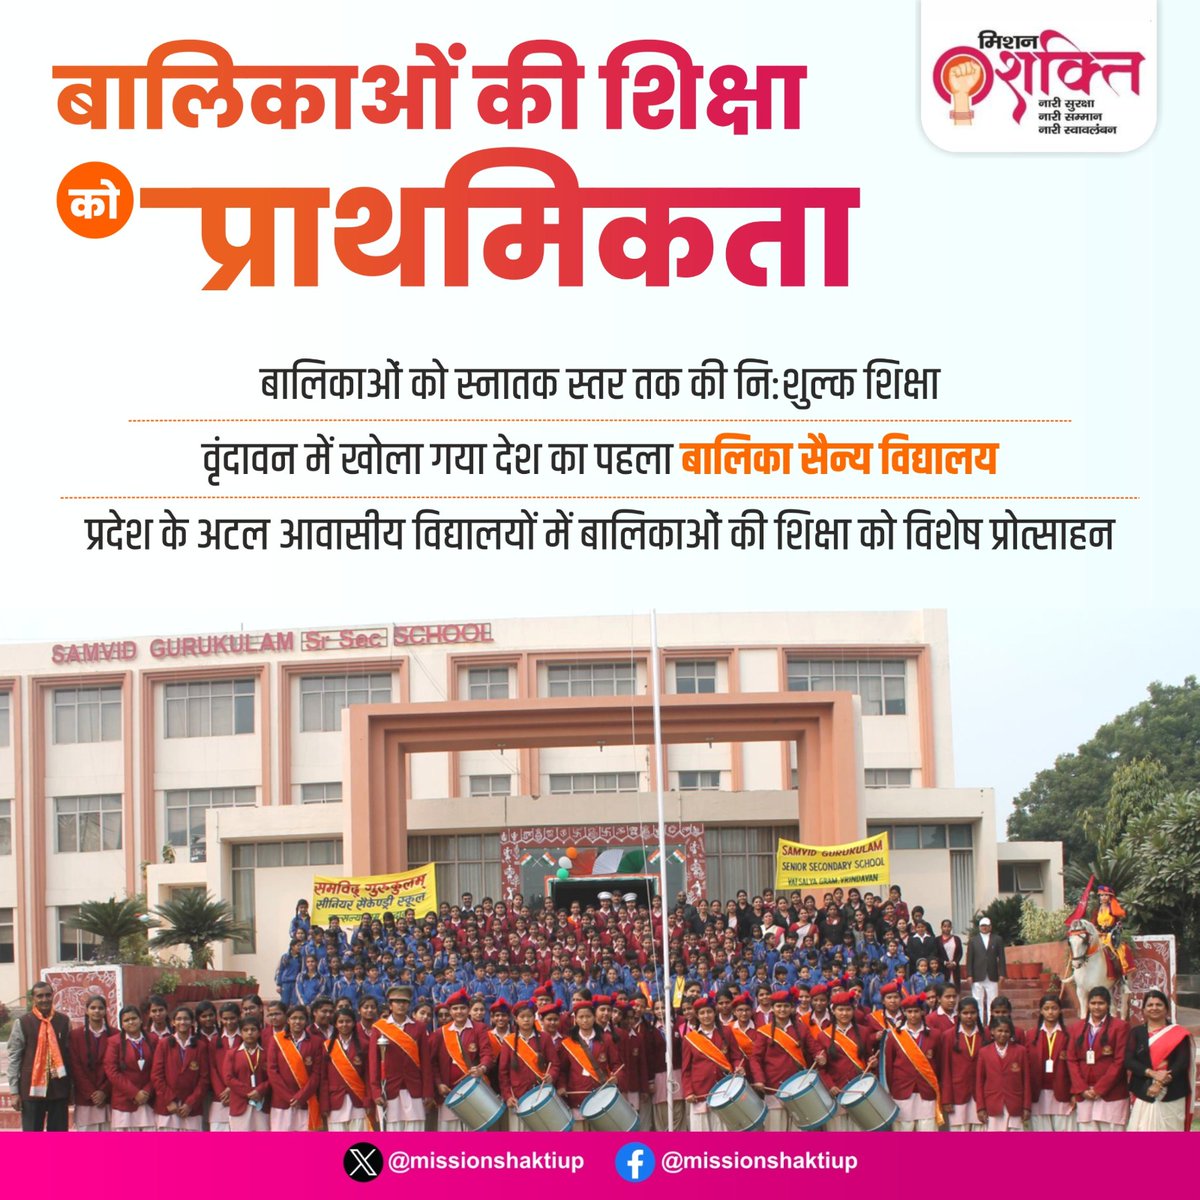 'नए भारत के नए उत्तर प्रदेश' में आज न सिर्फ बेटियों को नौकरियों में प्राथमिकता दी जा रही है, बल्कि उनकी शिक्षा के लिए भी कई बड़े कदम उठाए गए हैं। #UPCM श्री @myogiadityanath जी के कुशल नेतृत्व में योजना के माध्यम से बालिकाओं को स्नातक स्तर तक की शिक्षा नि:शुल्क दी जा रही है।